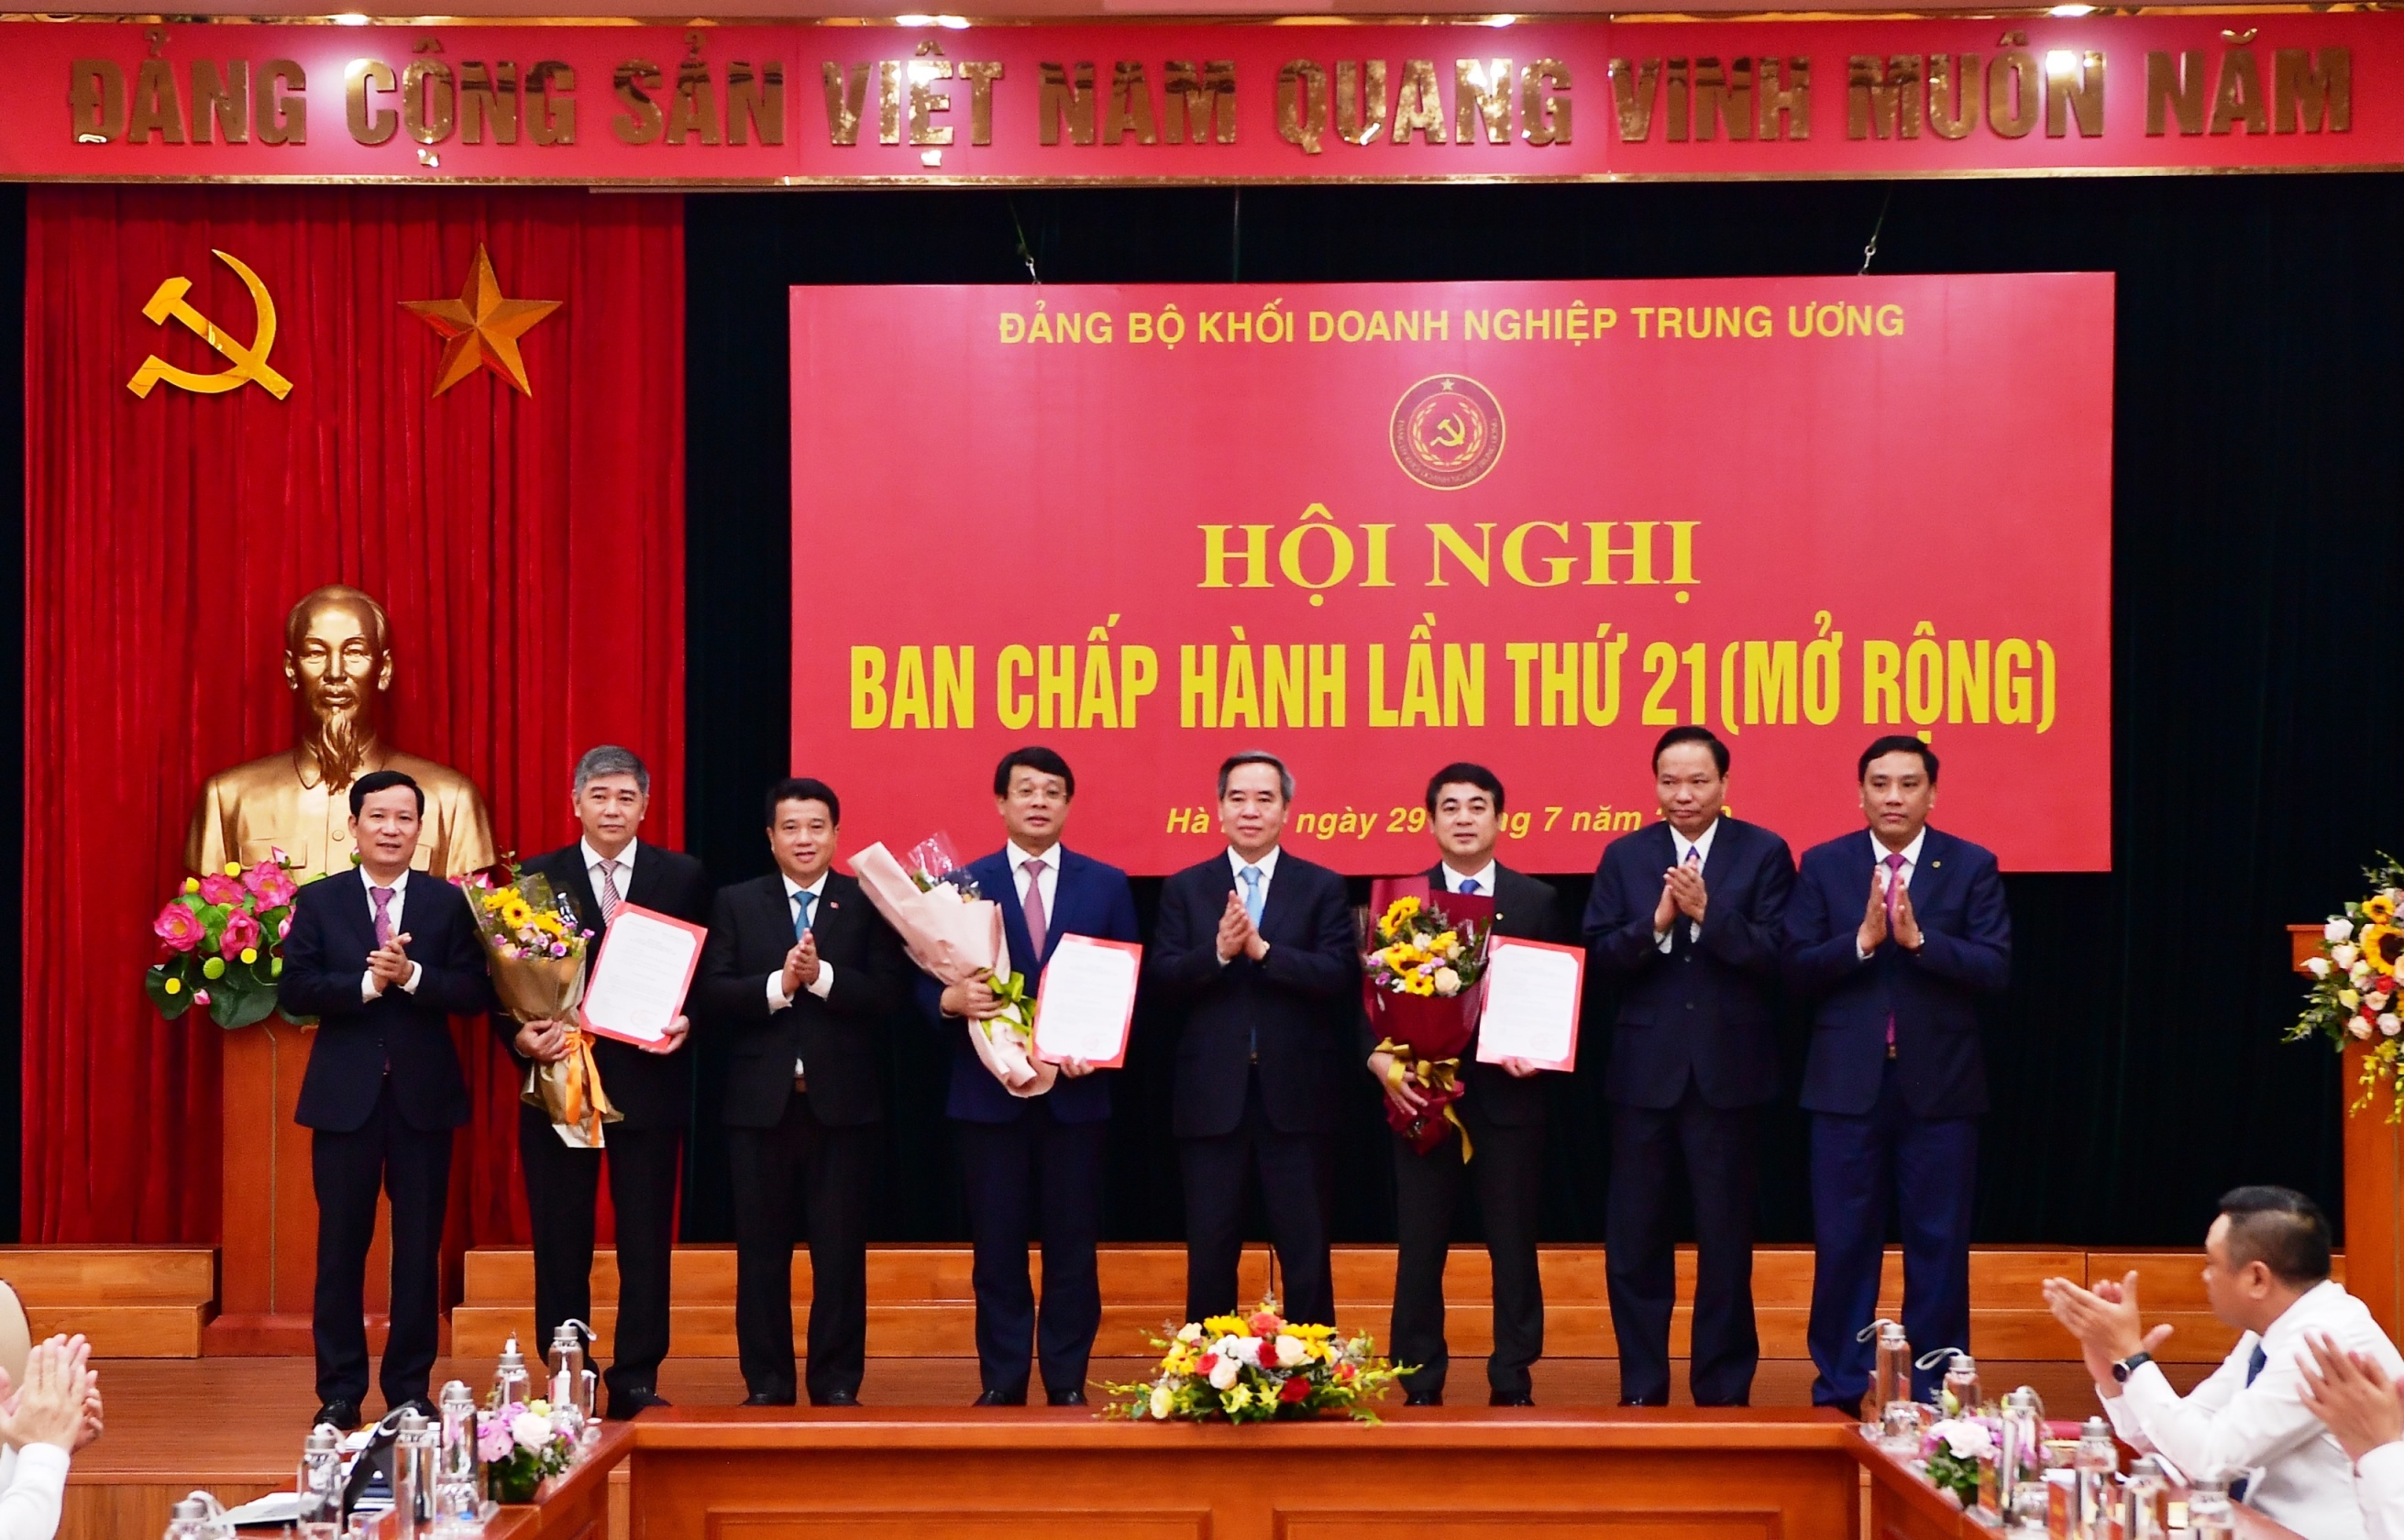 Chủ tịch HĐQT Vietcombank giữ chức  Ủy viên Ban Thường vụ Đảng ủy Khối DNTW